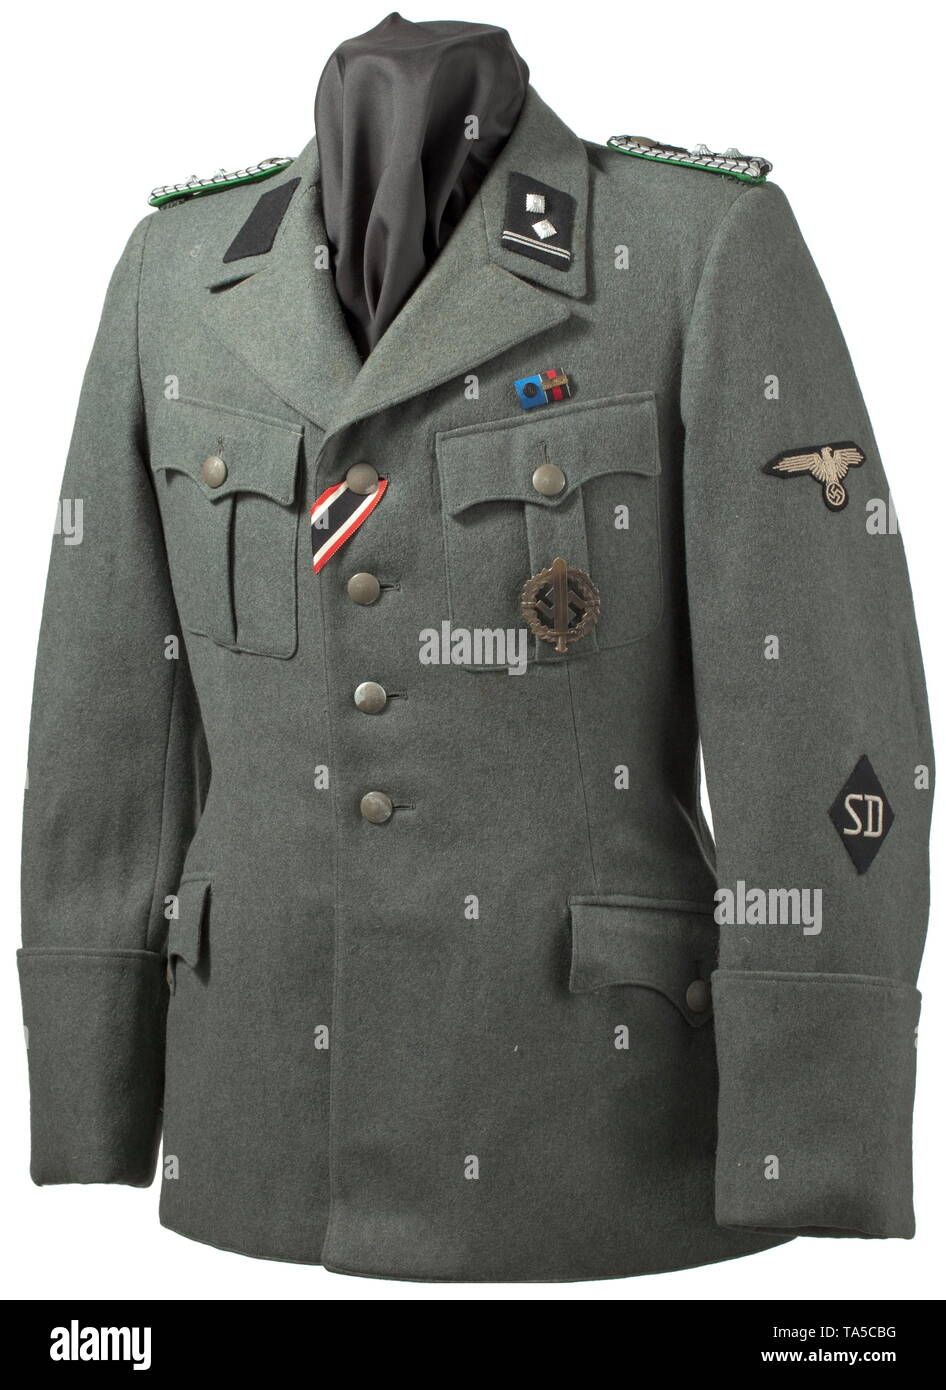 Форма сд. Китель немецкого офицера SD ww2. Униформа офицера SD Waffen SS ww2. Китель Ваффен СС. SD Waffen SS форма.